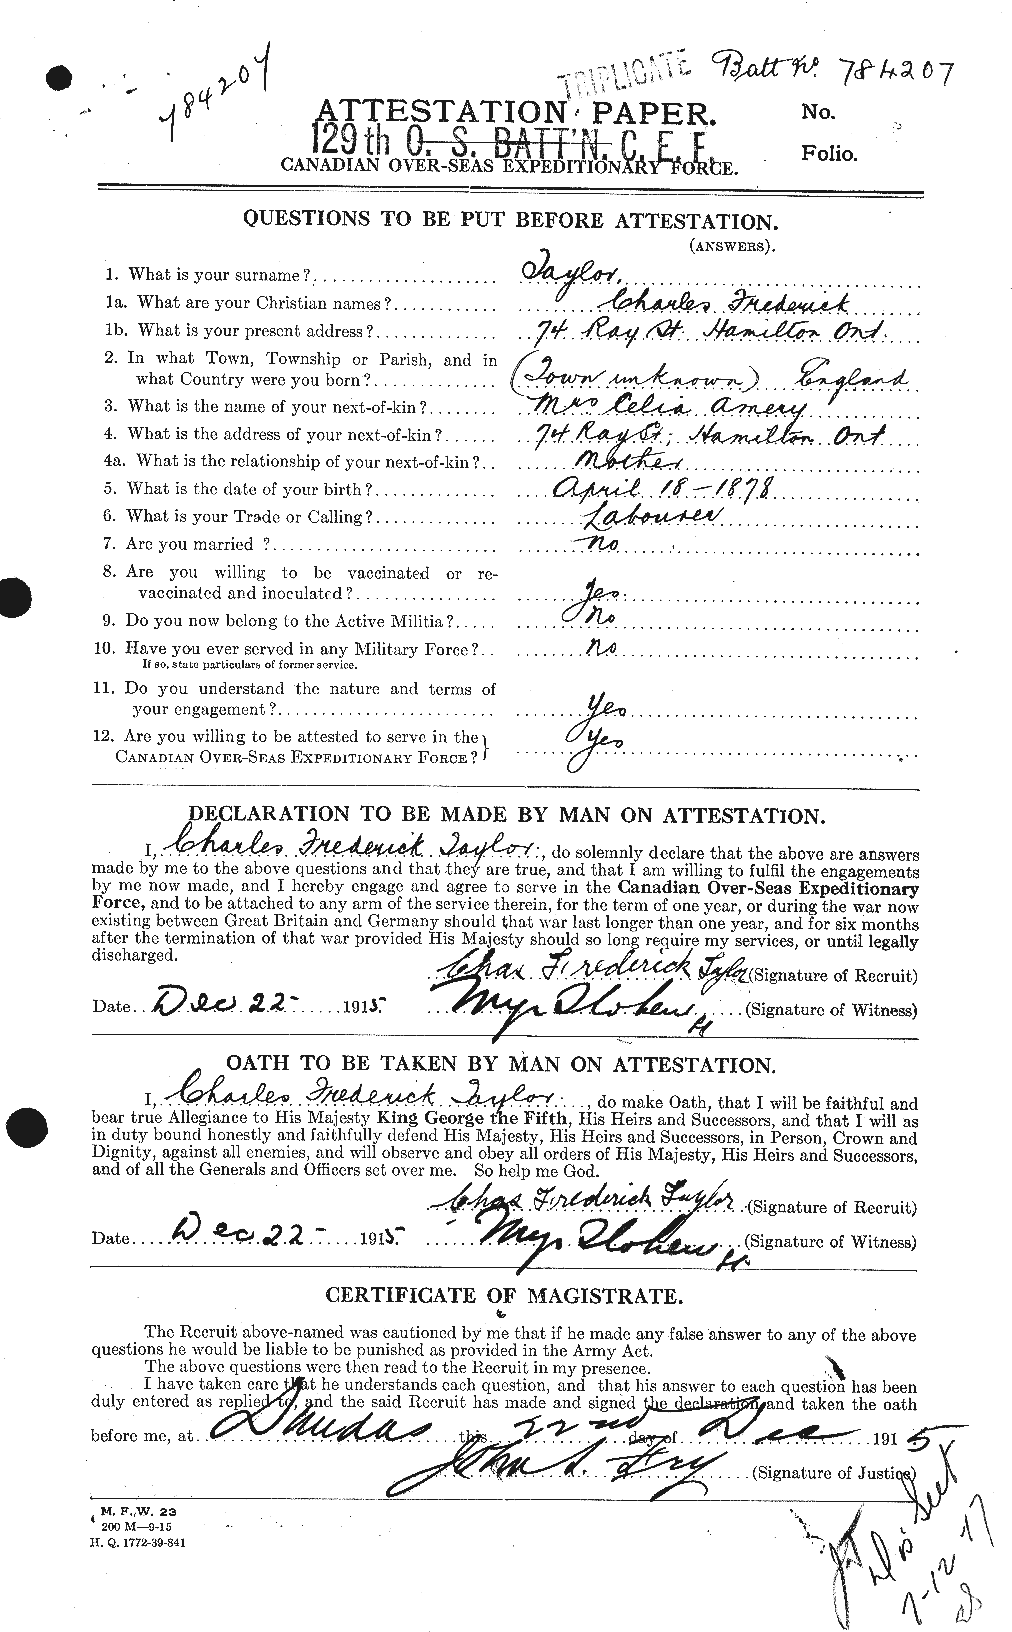 Dossiers du Personnel de la Première Guerre mondiale - CEC 626842a